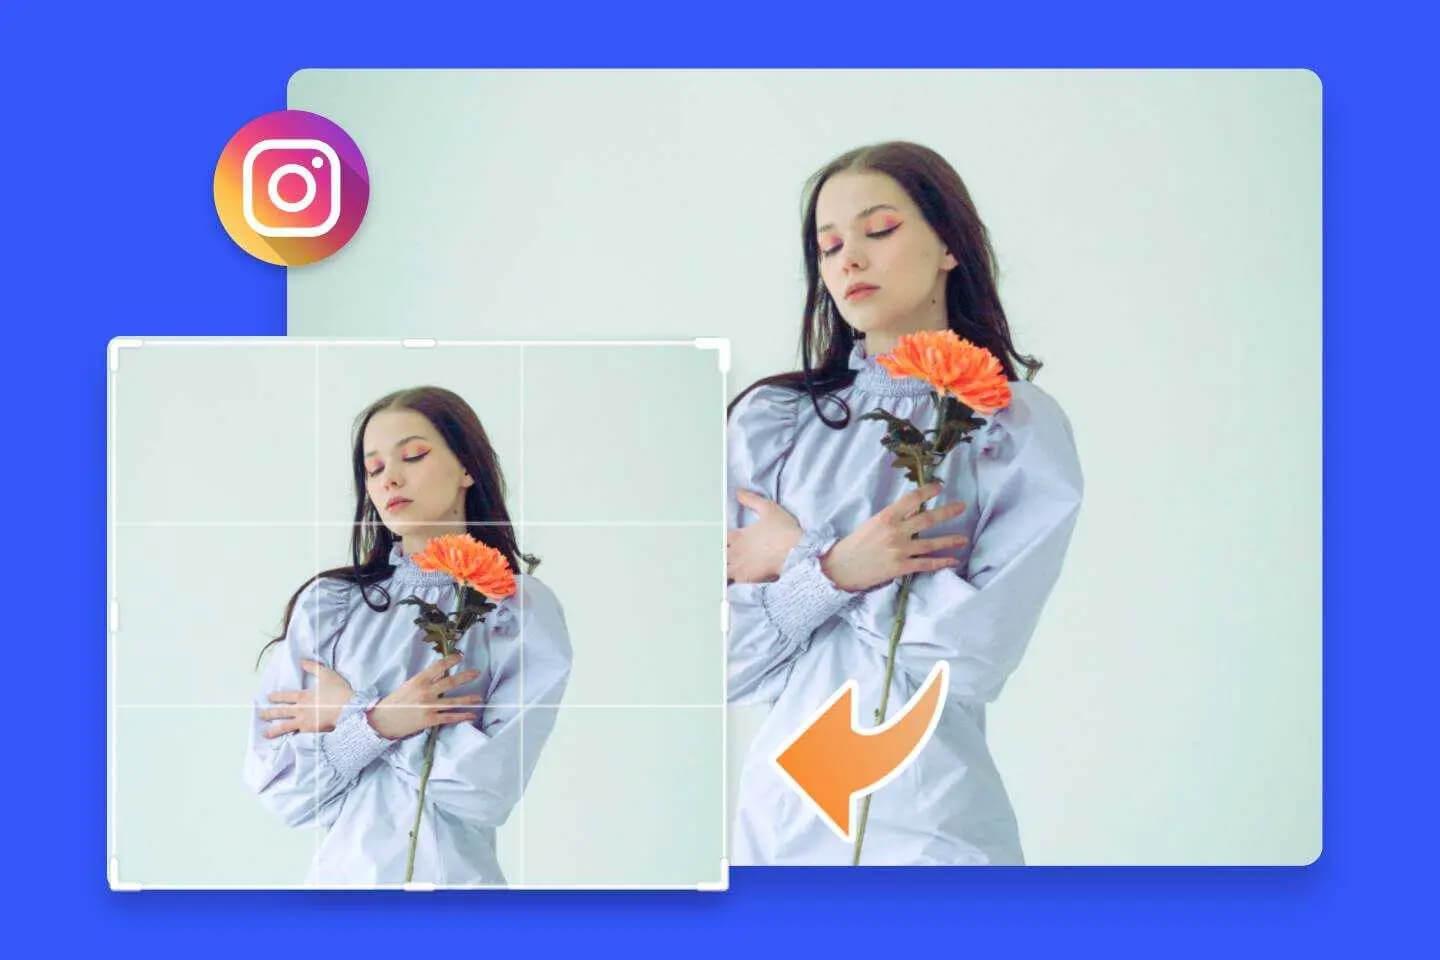 Cambiar tamaño de imagen para Instagram en línea de forma gratuita con el redimensionador de fotos para Instagram de Fotor